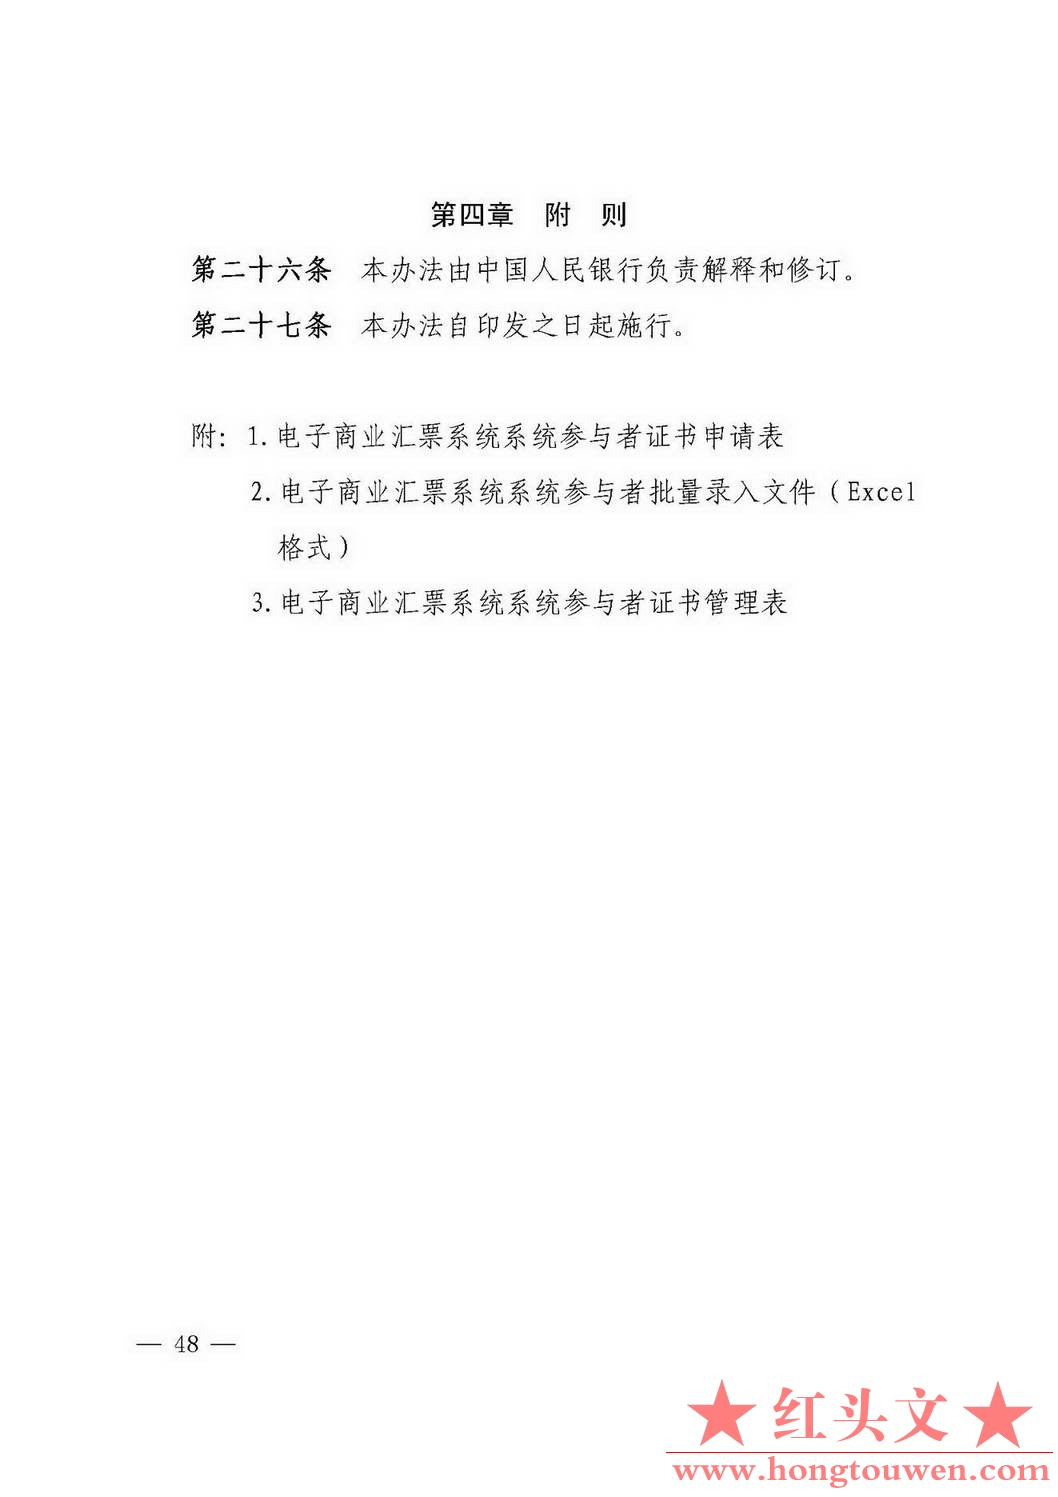 银发[2018]152号-中国人民银行关于修订《电子商业汇票系统管理办法》等四项制度的通知.jpg